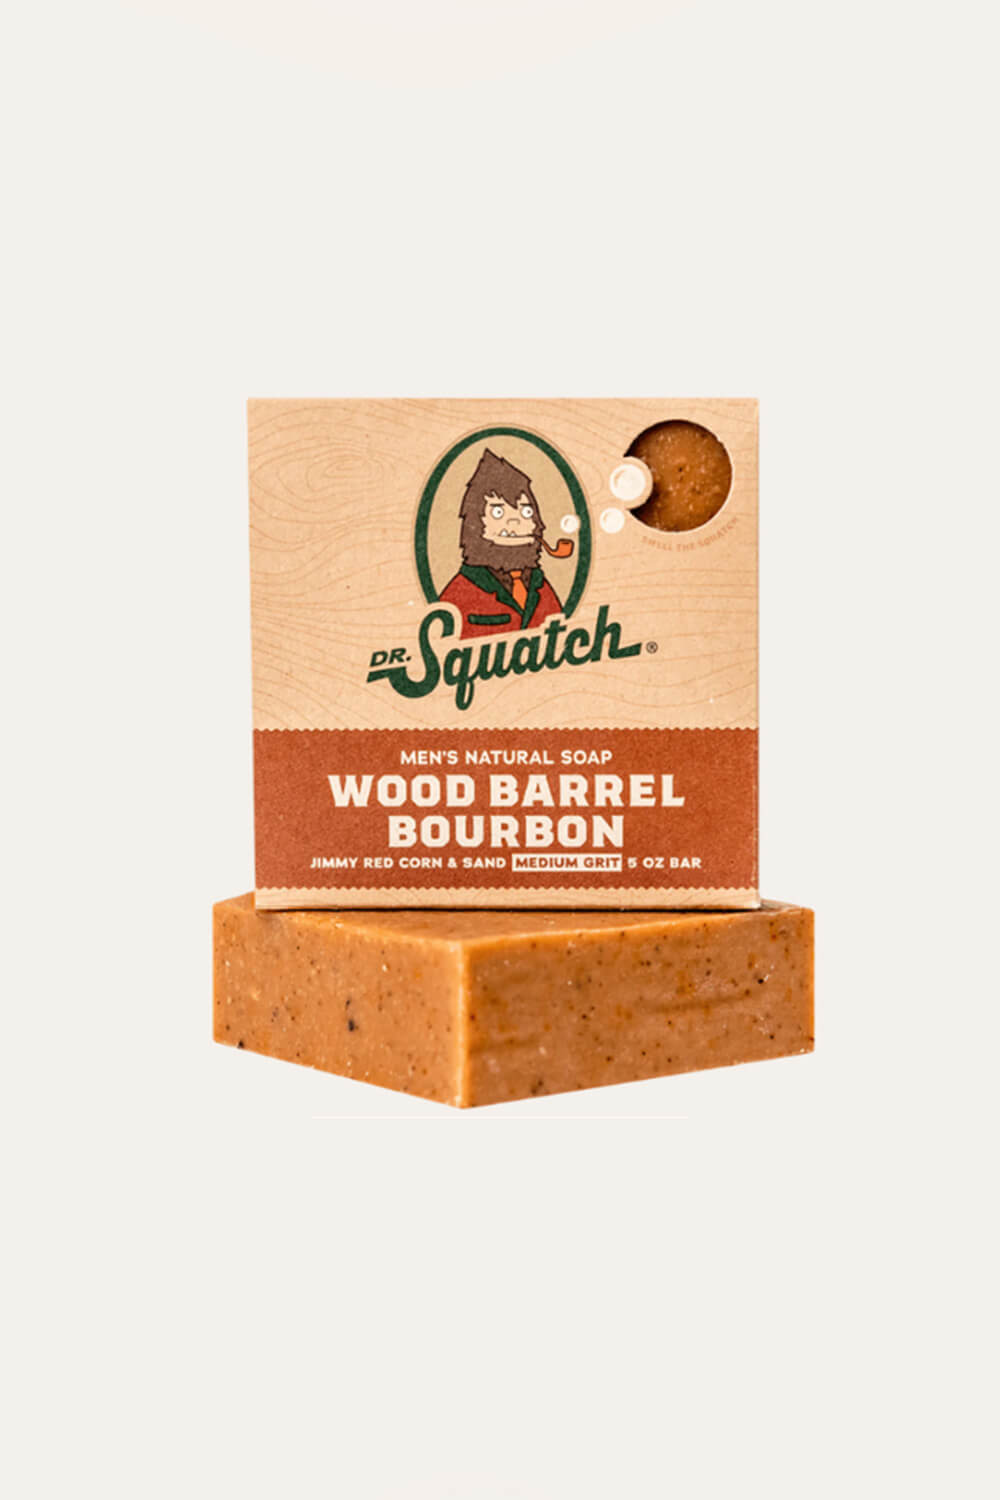 Dr. Squatch All Natural Bar Soap for Men, 3 Bar Variety Pack, Wood Barrel  Bourbon, Fresh